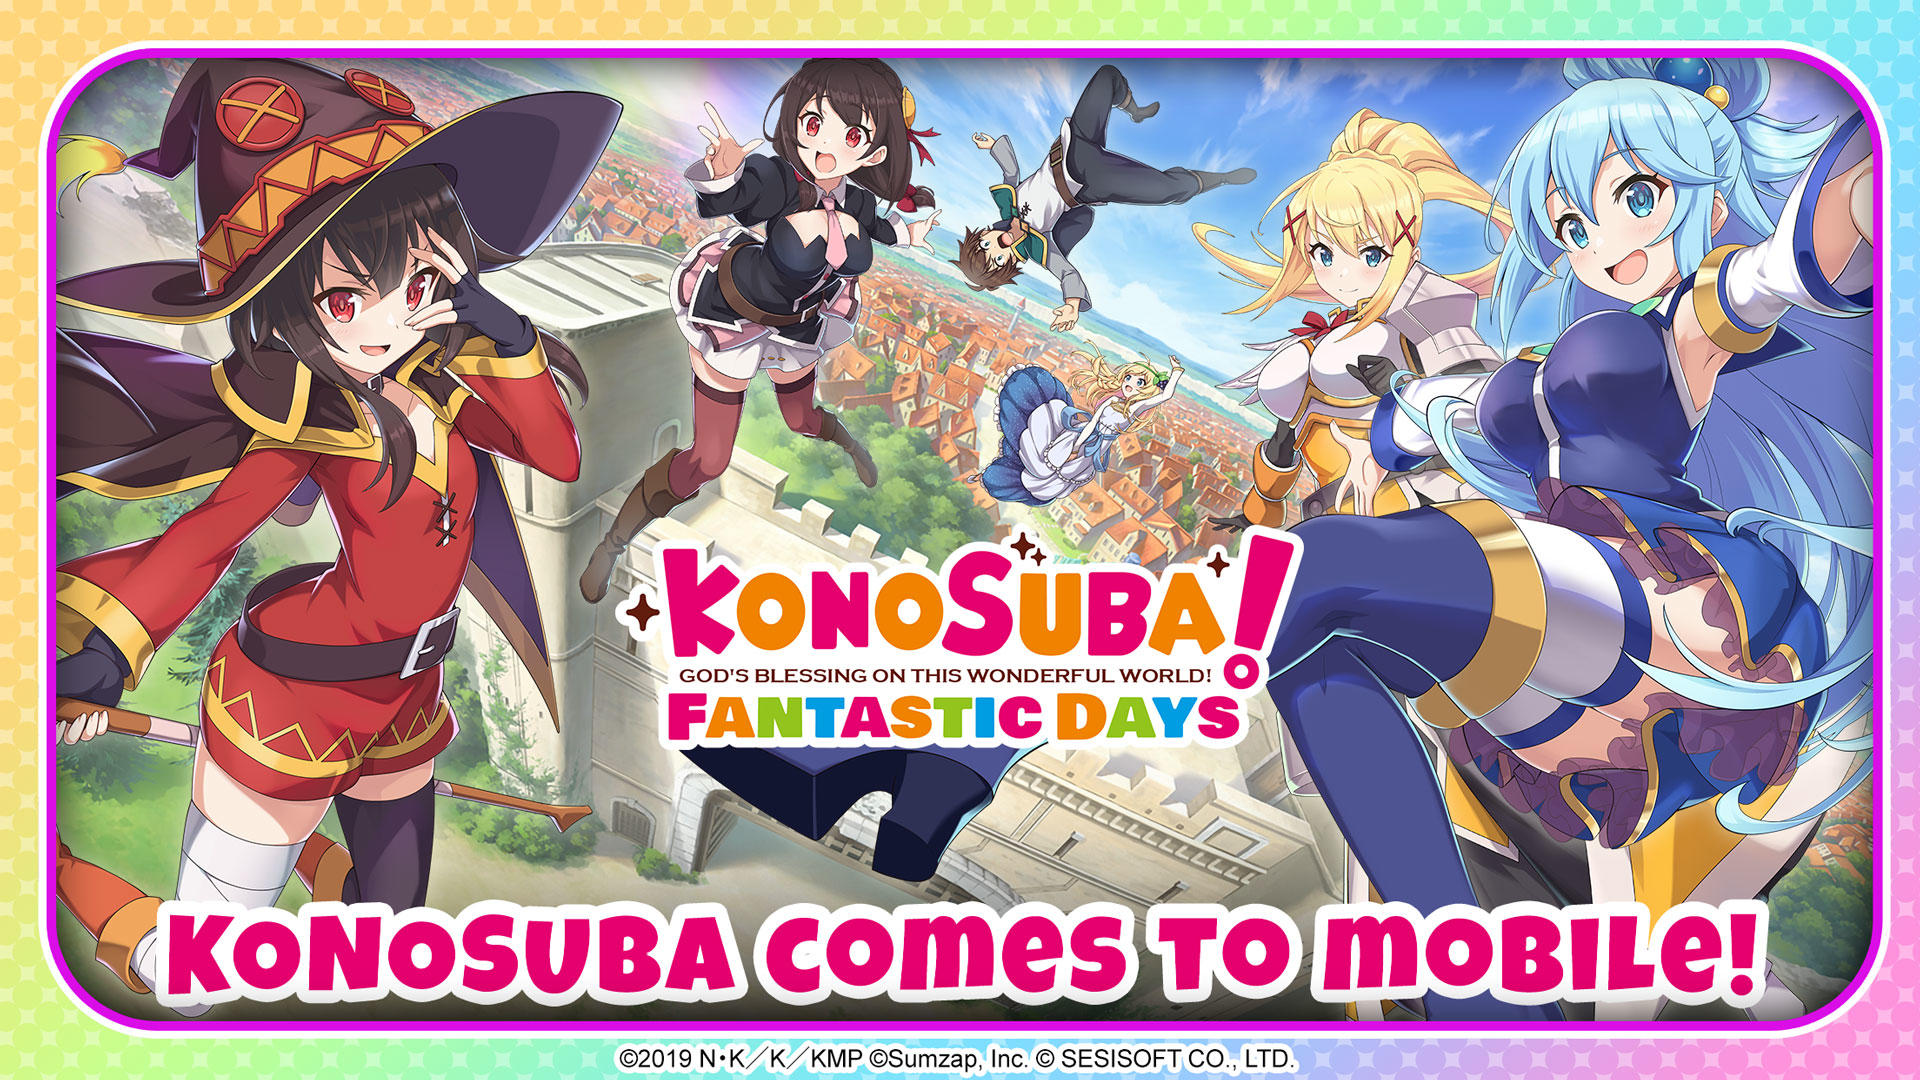 Screenshot 1 of KonoSuba: Fantastic Days 4.5.10